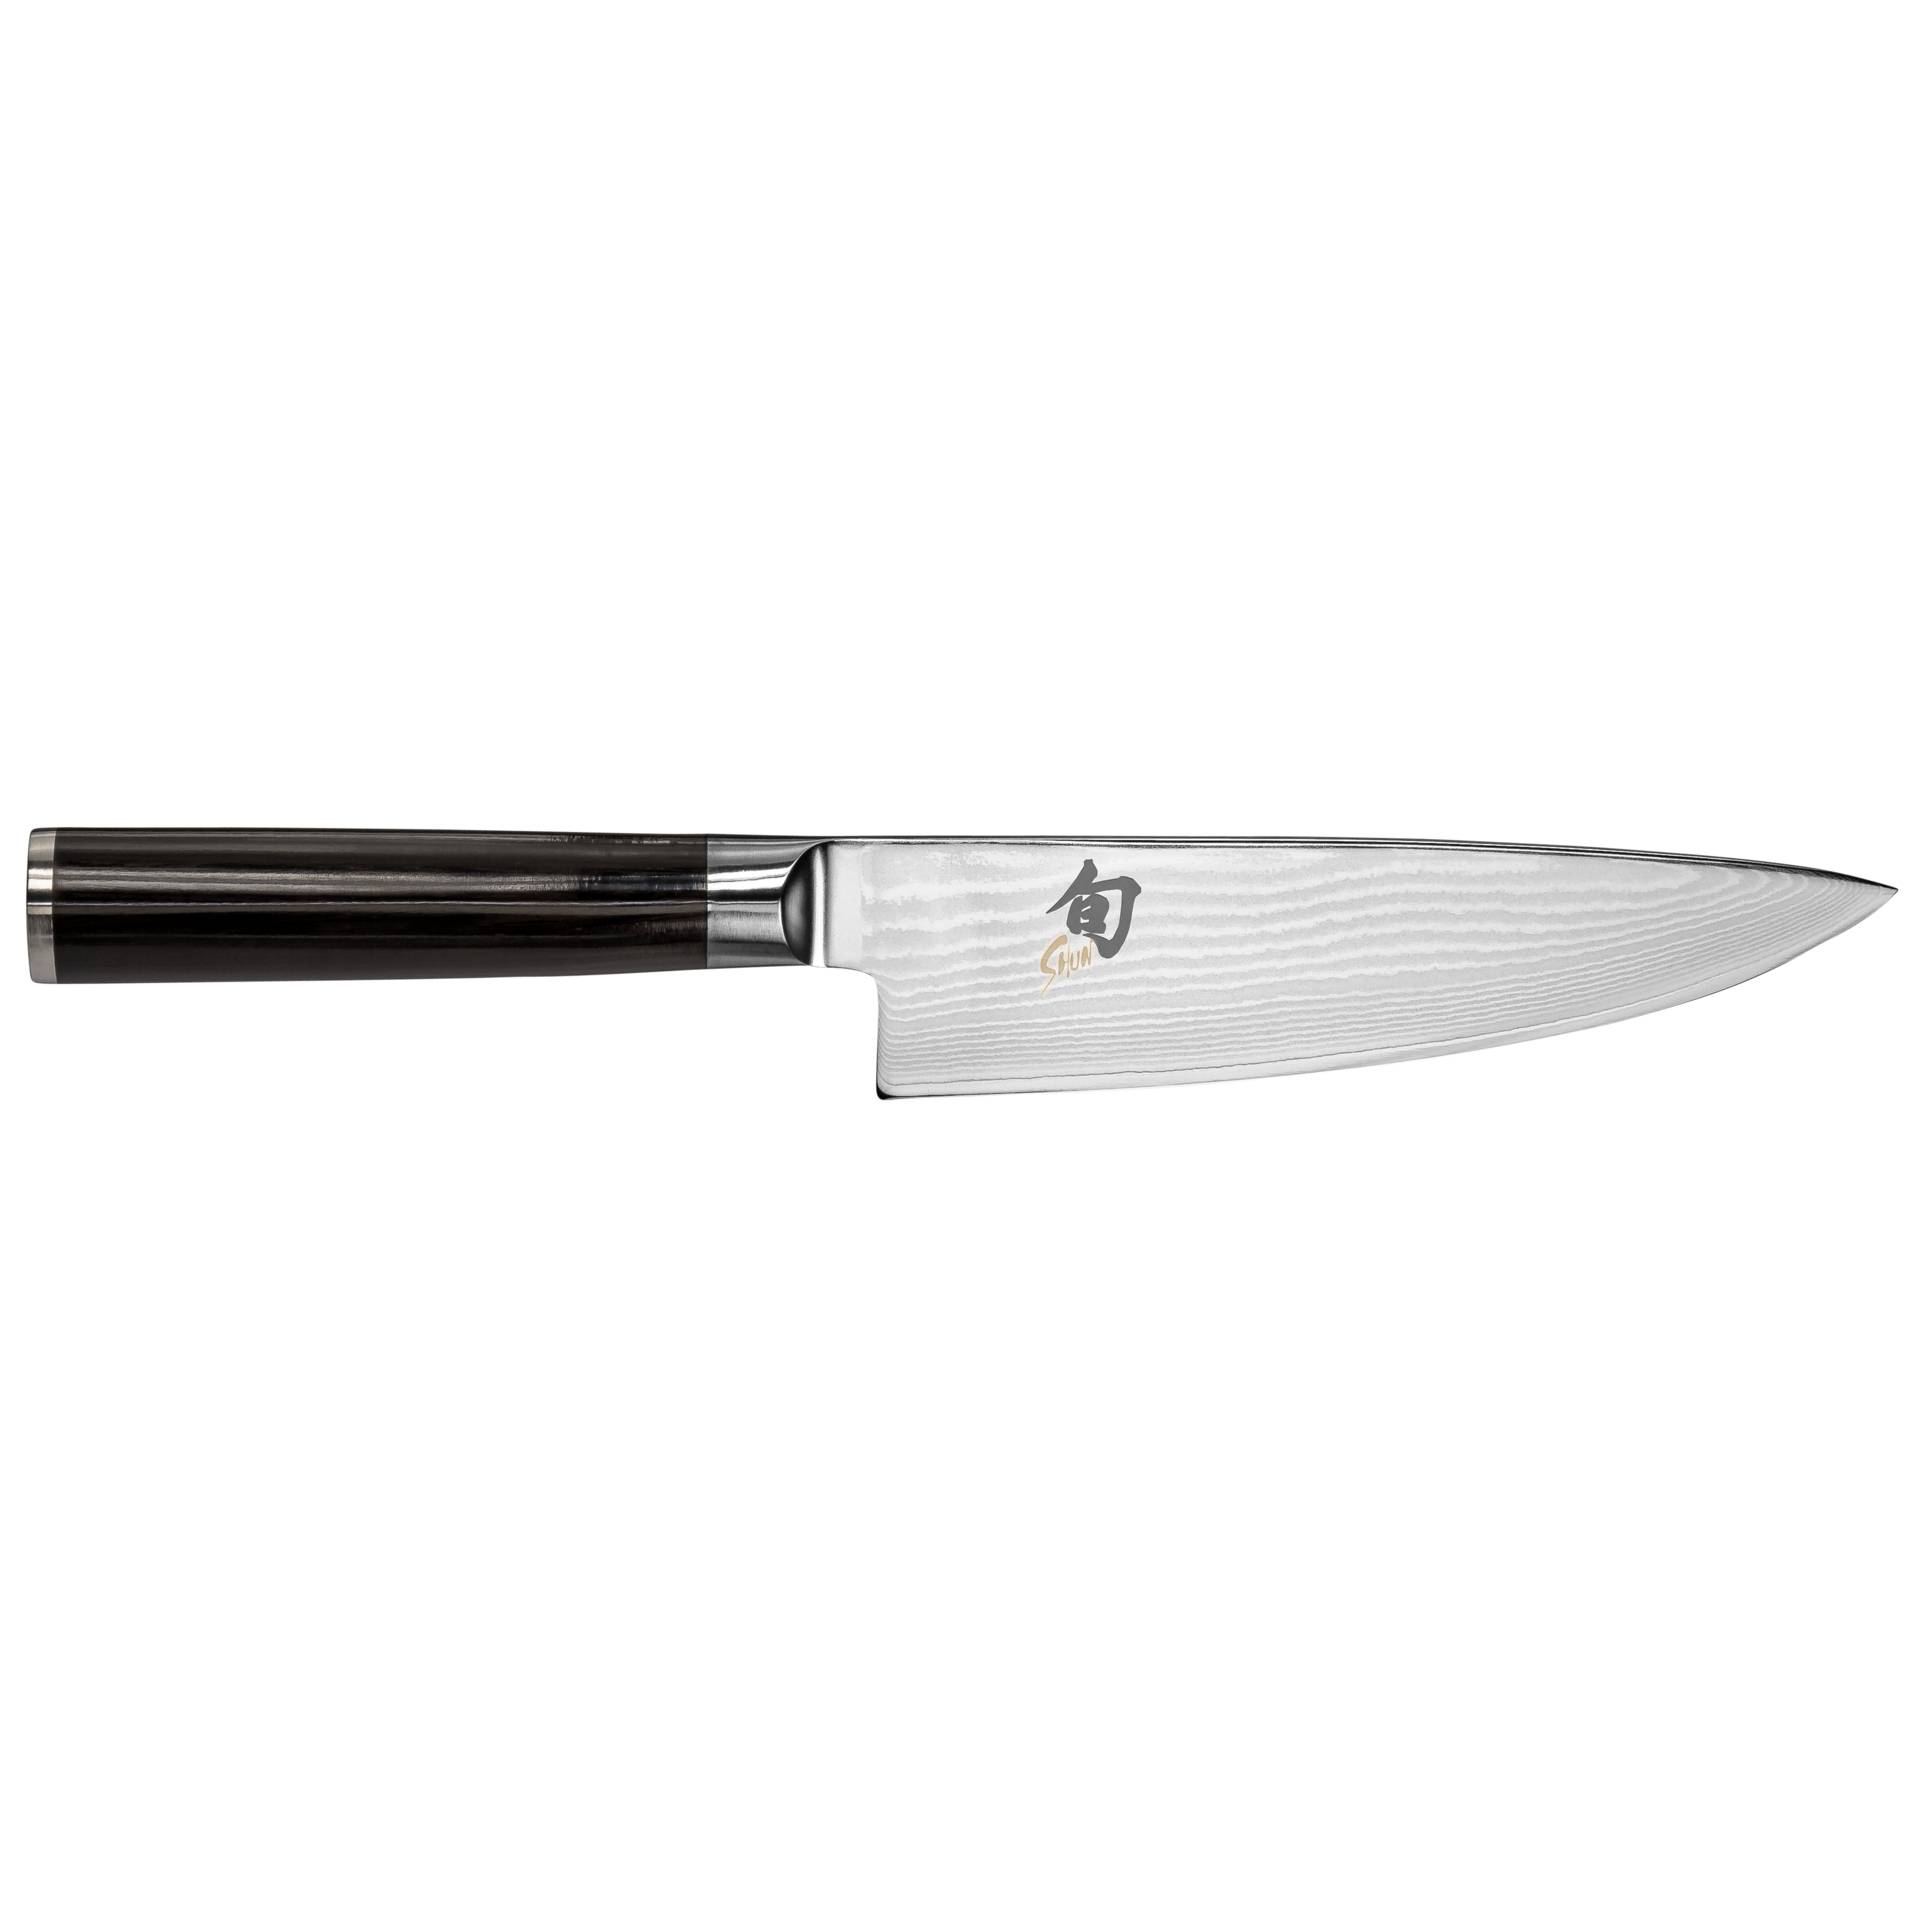 KAI Shun Classic coltello cuoco 15,0cm